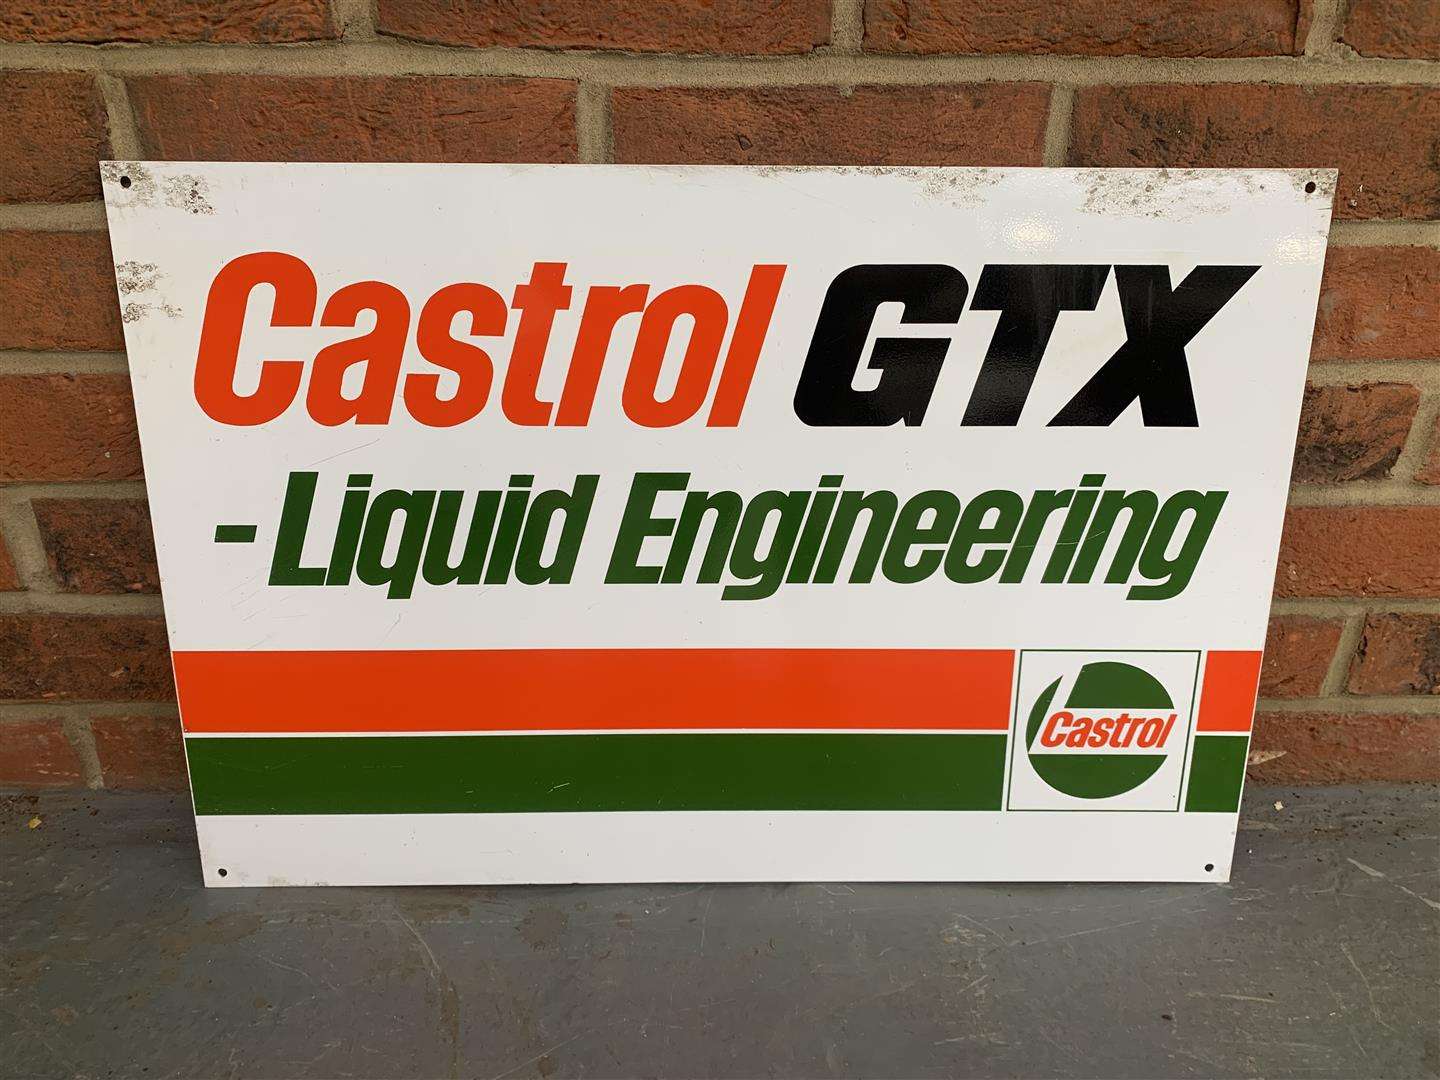 <p>Aluminium Castrol GTX Liquid Engineering Sign</p>